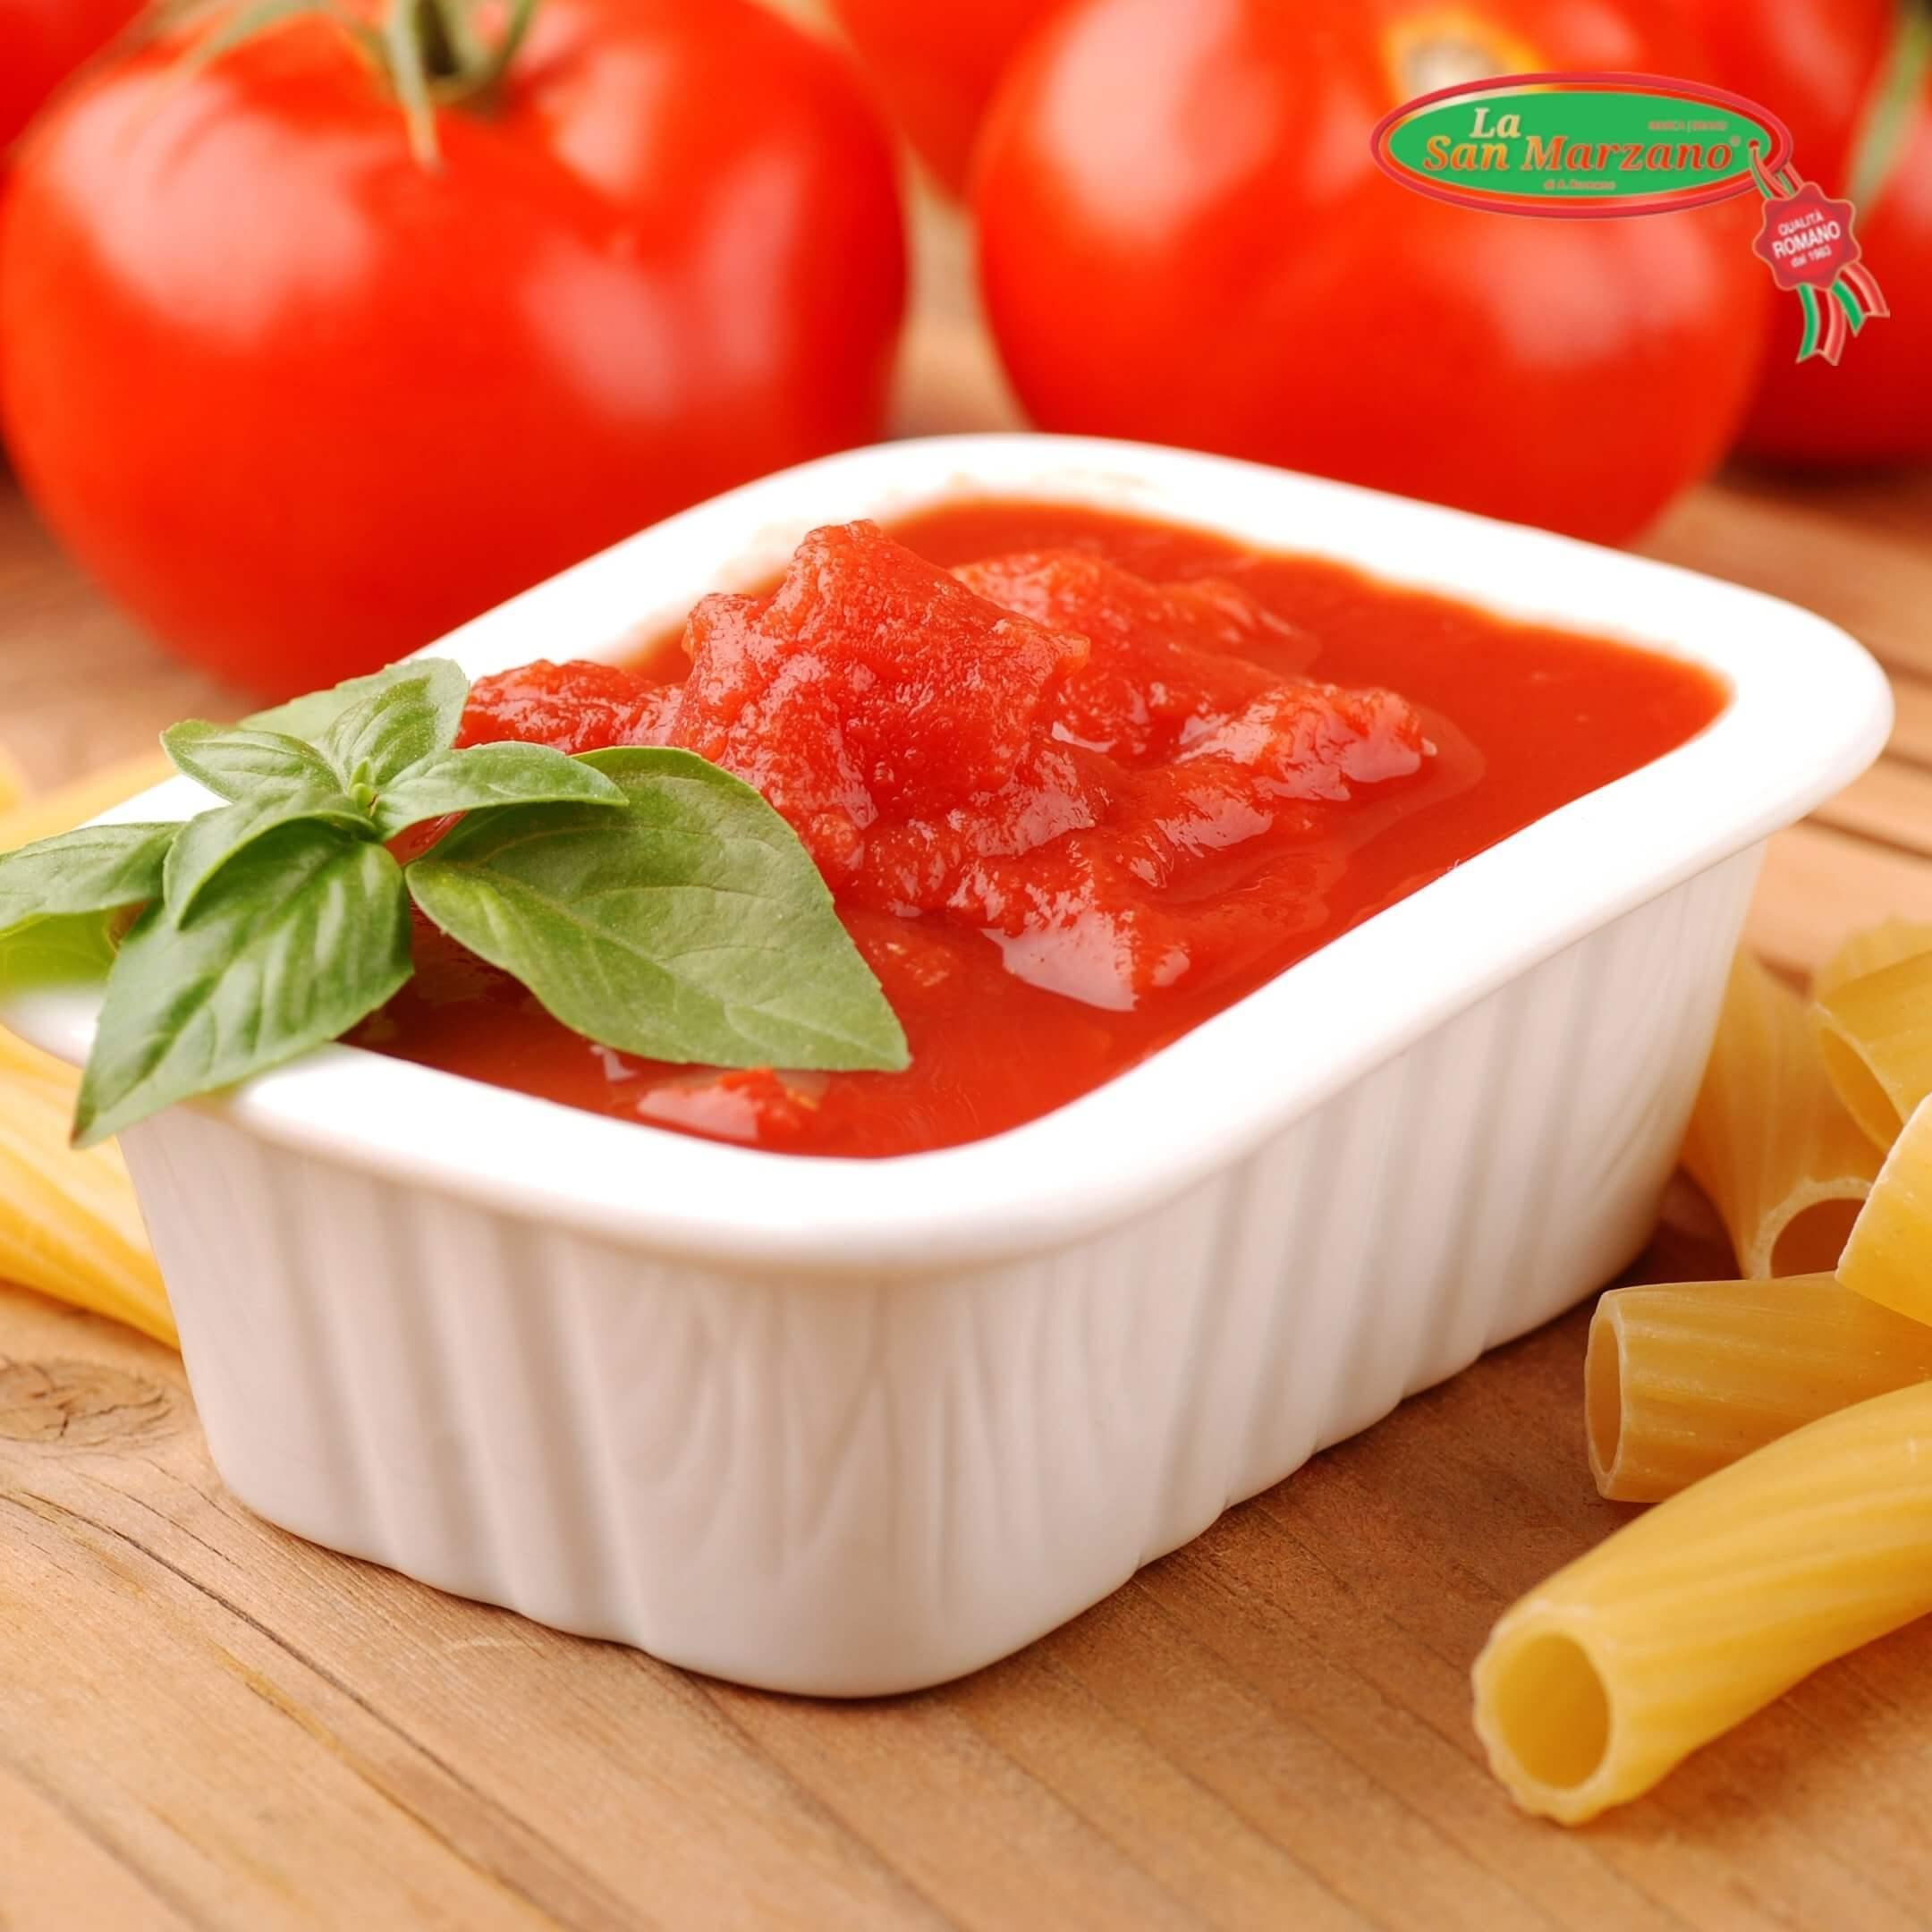 La San Marzano Arrabbiata Tomato Sauce 24 oz. - Wholesale Italian Food